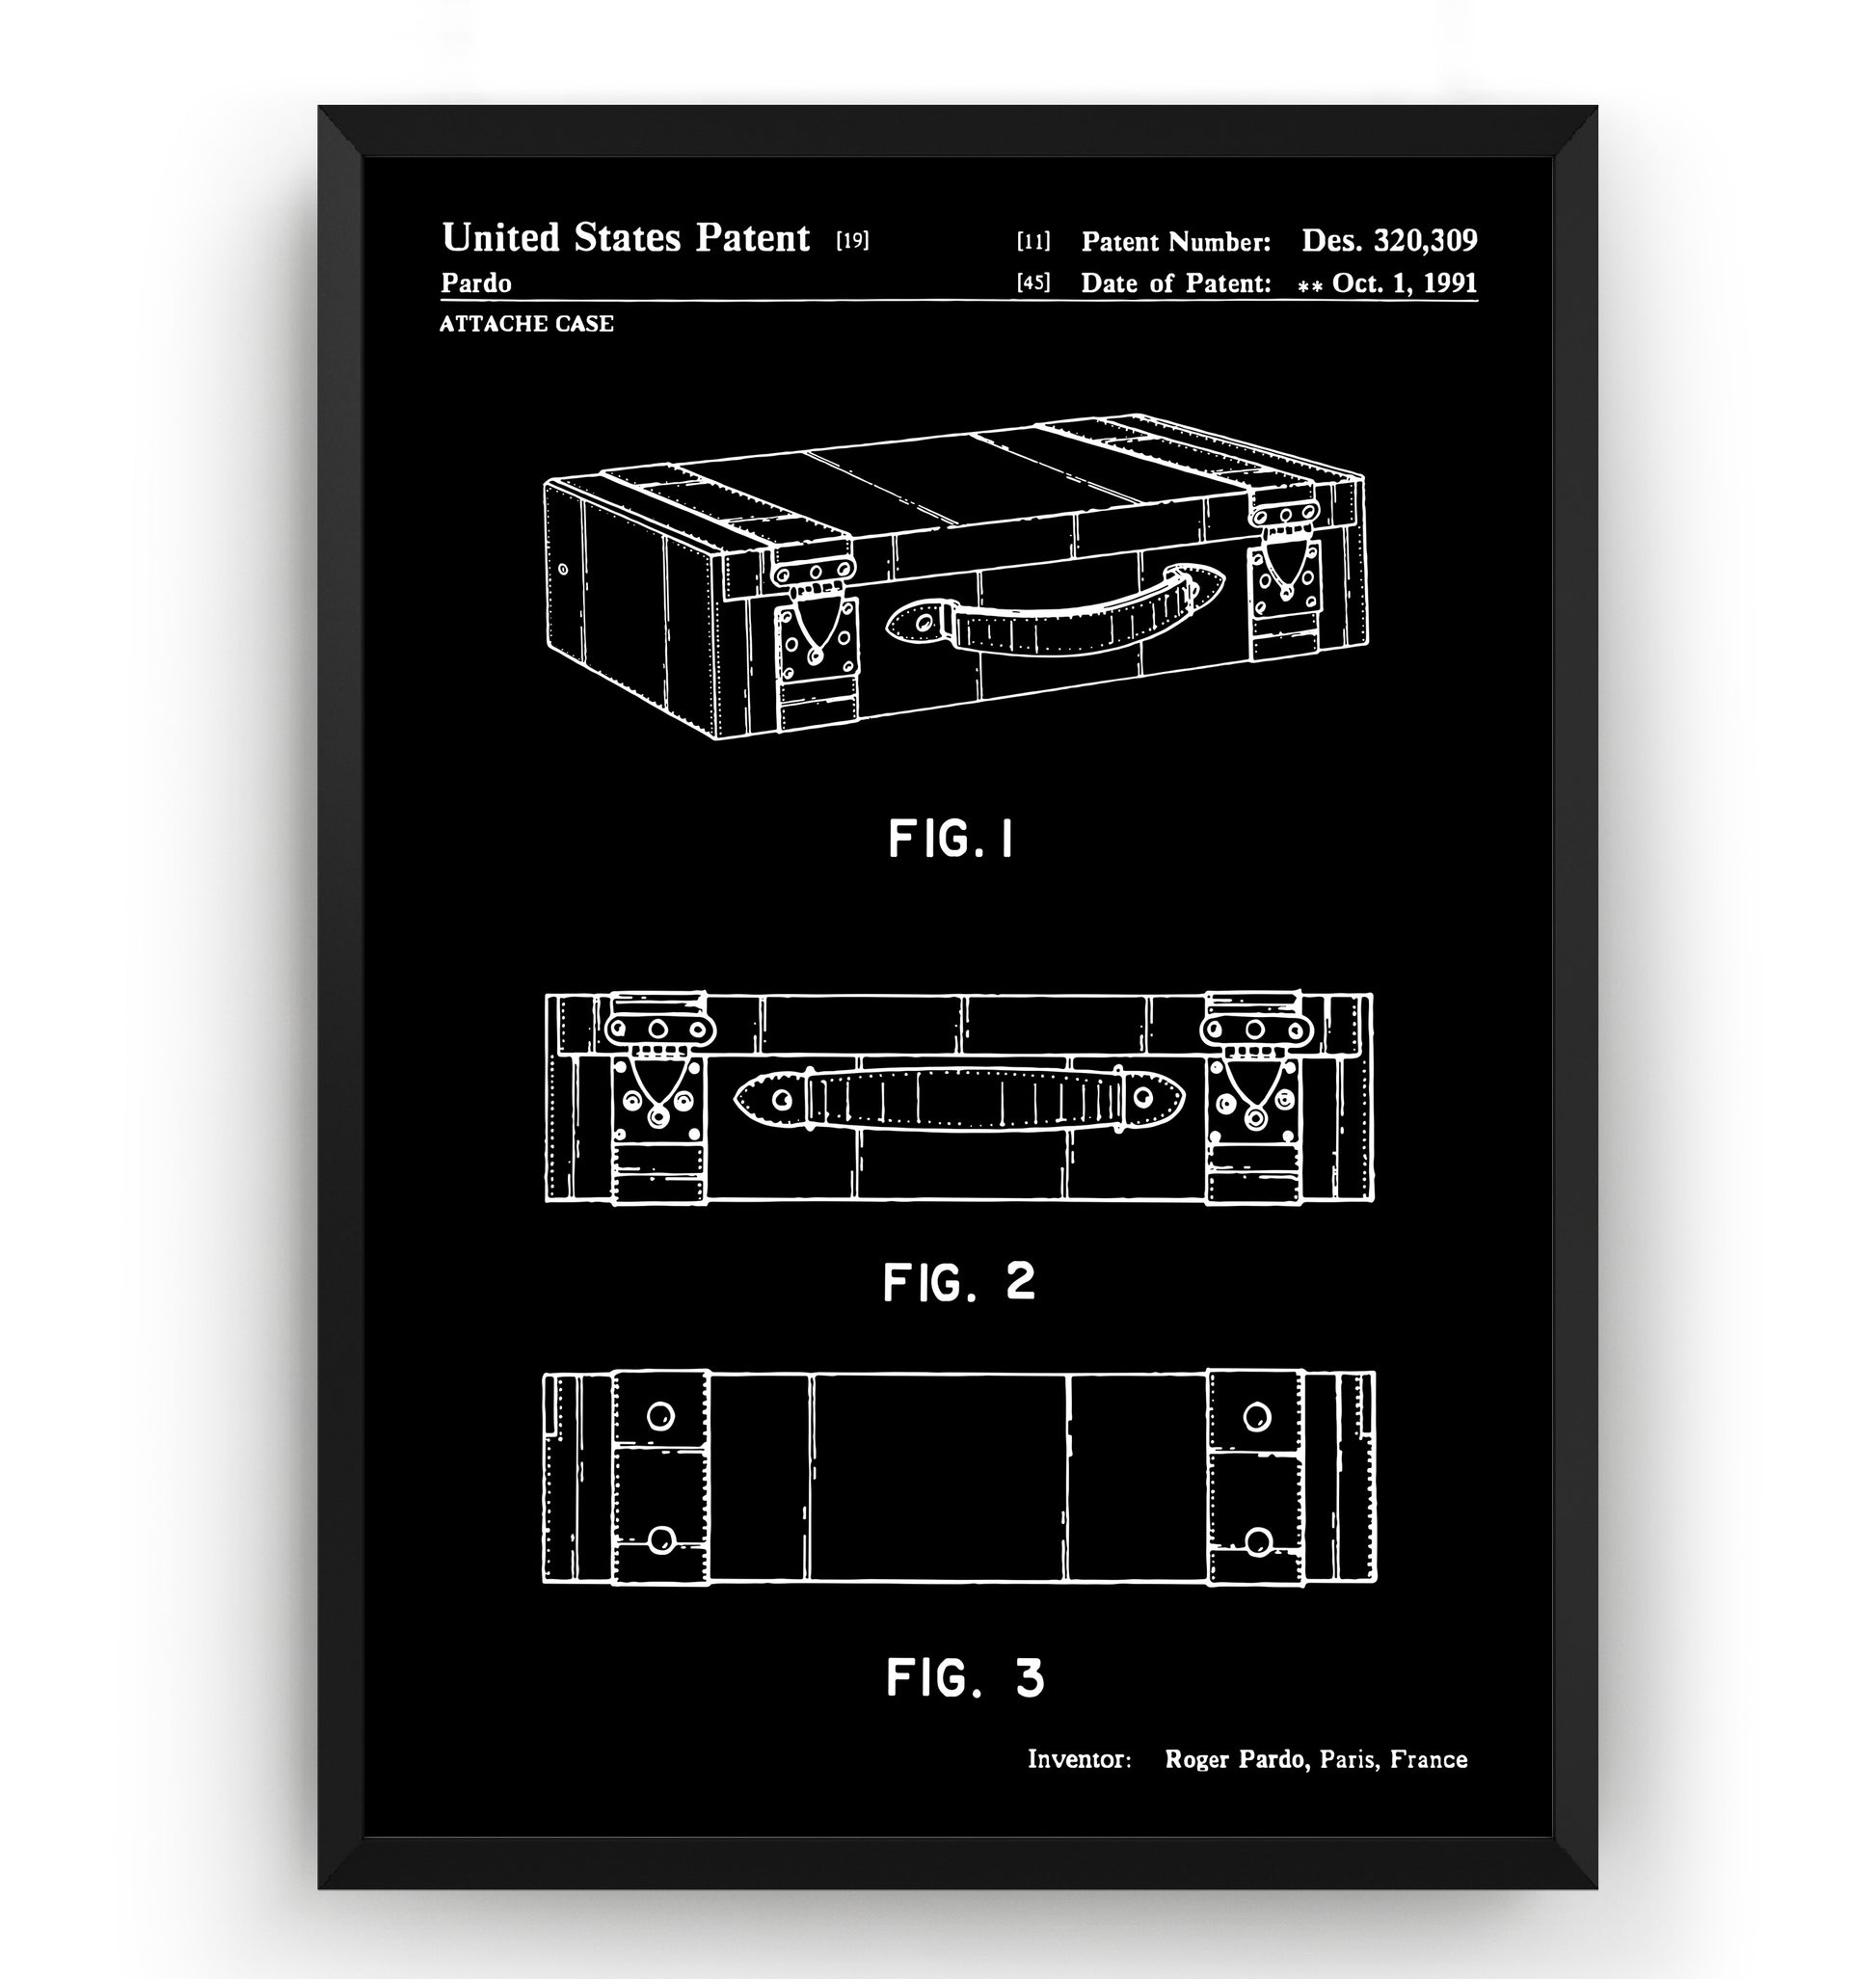 LV Attache Case 1991 Patent Print - Magic Posters